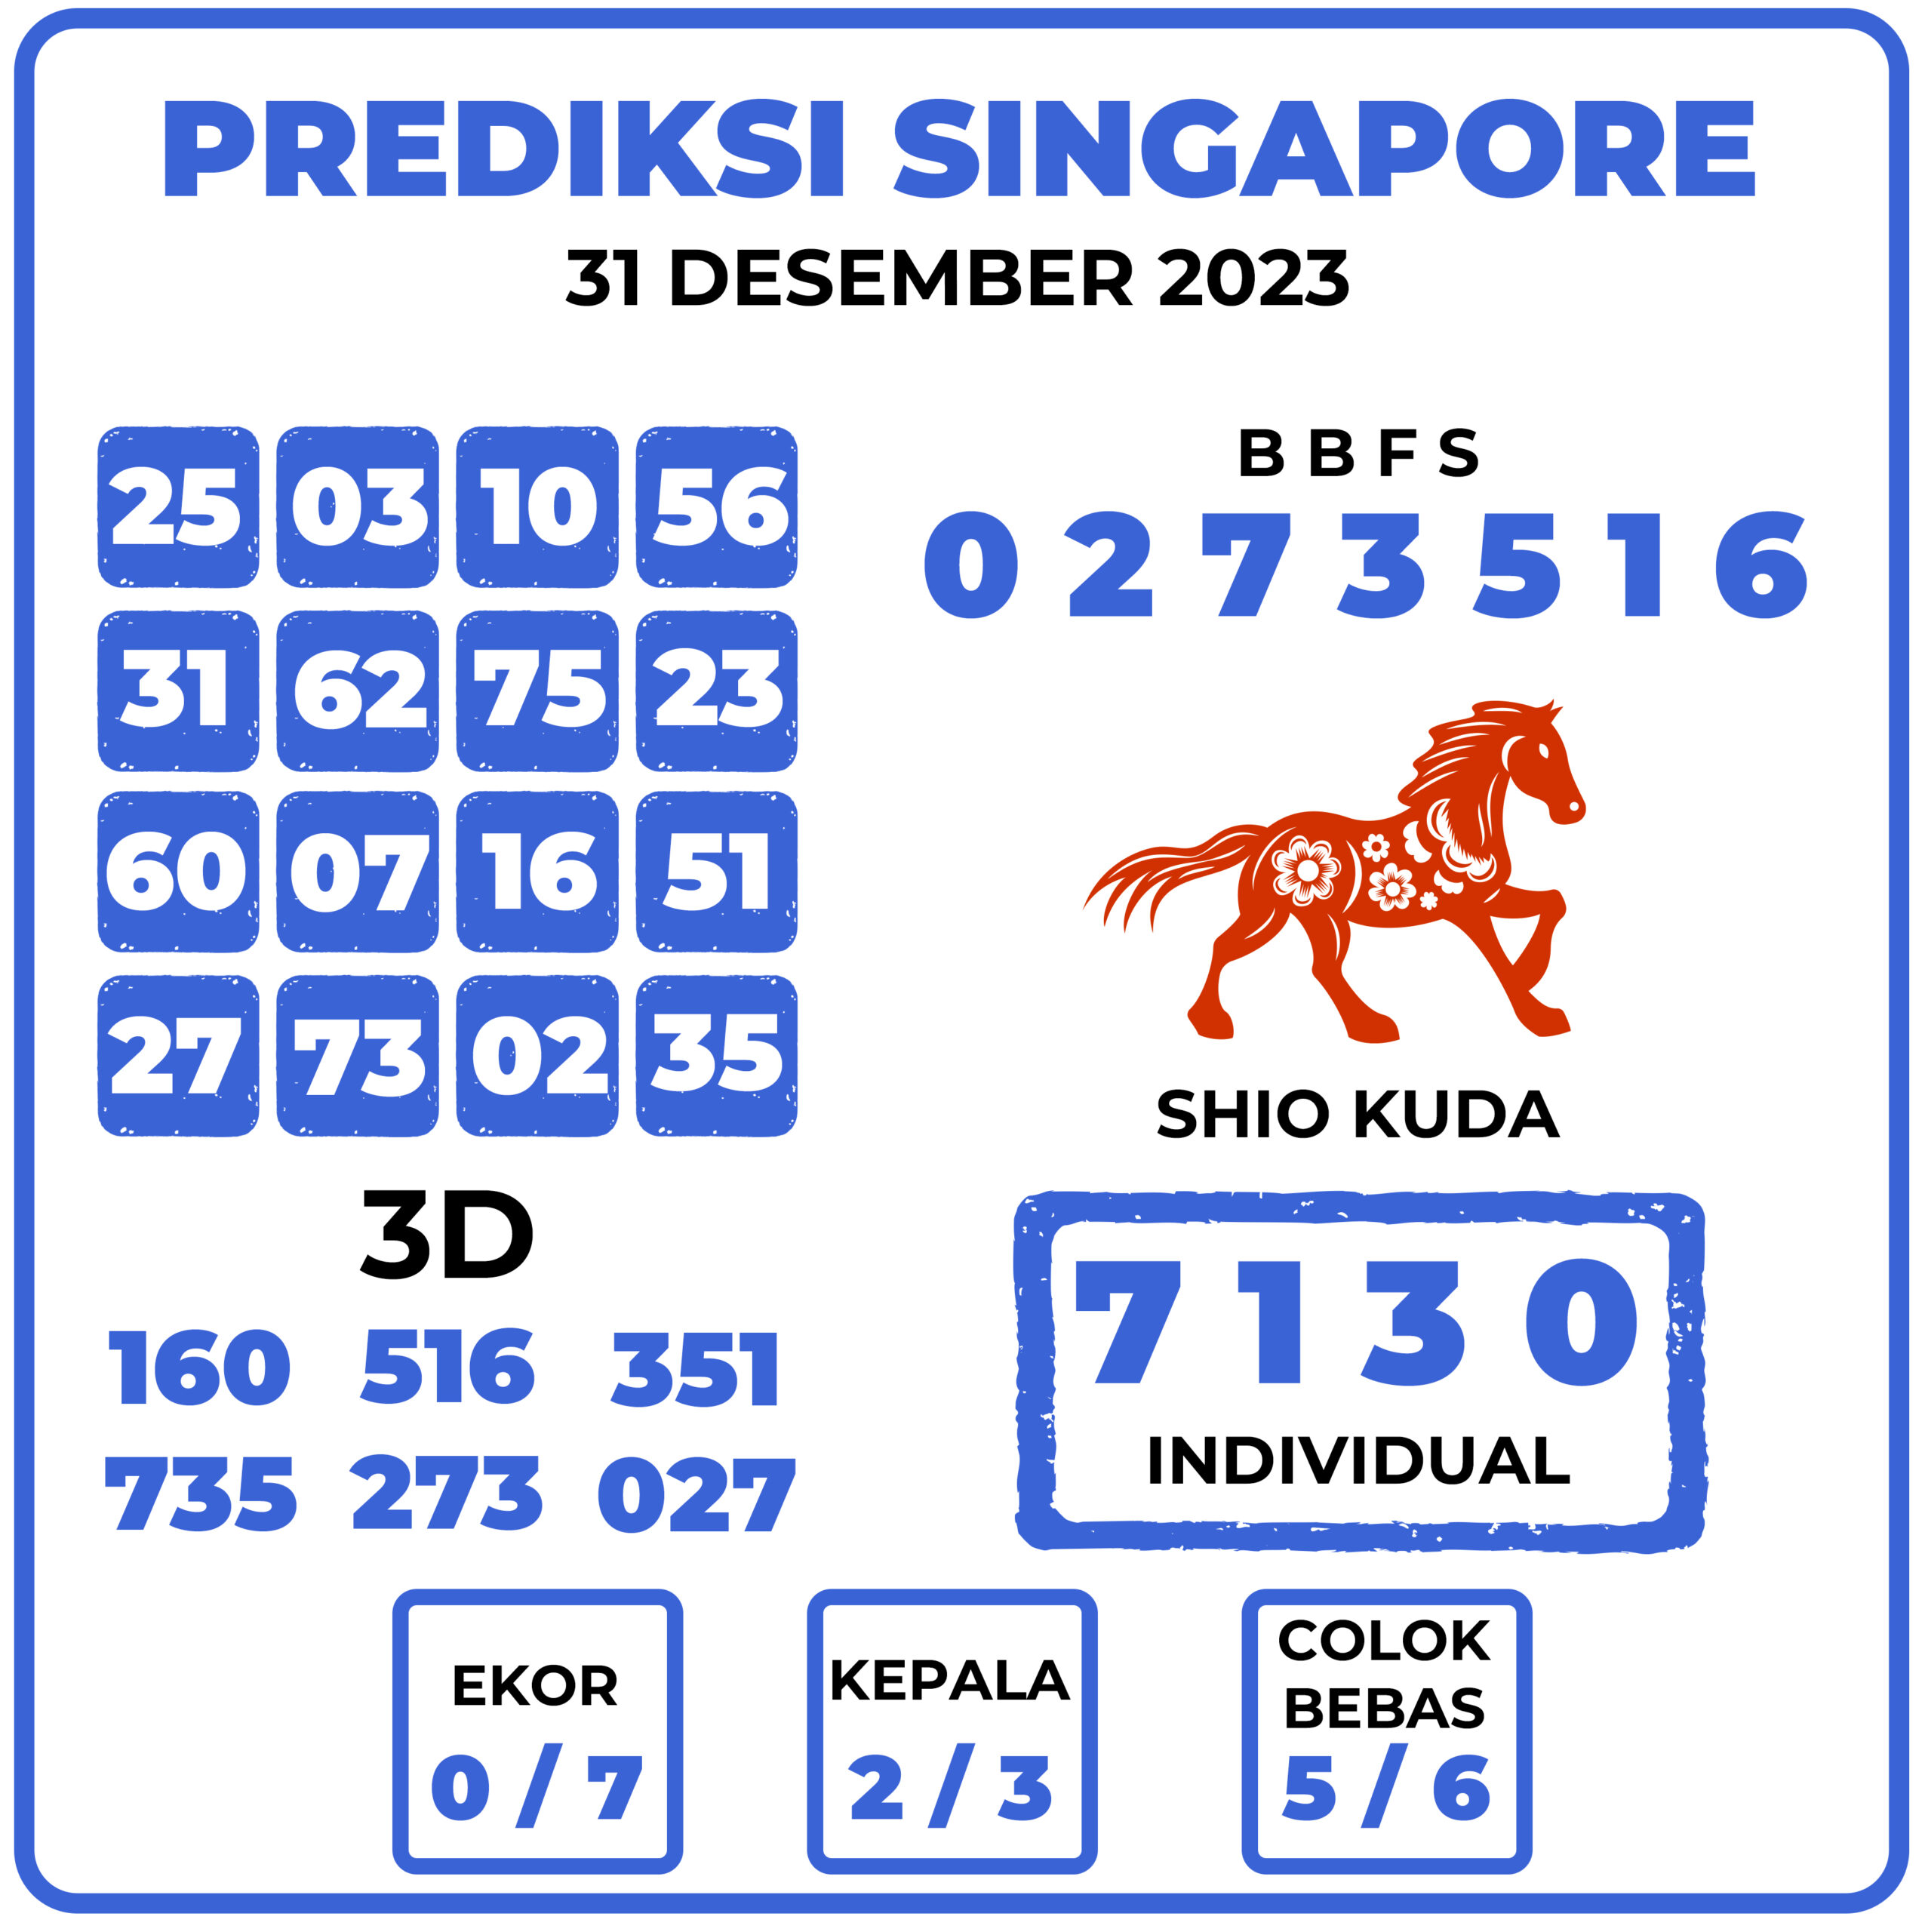 Prediksi Togel Singapore 31 Desember 2023